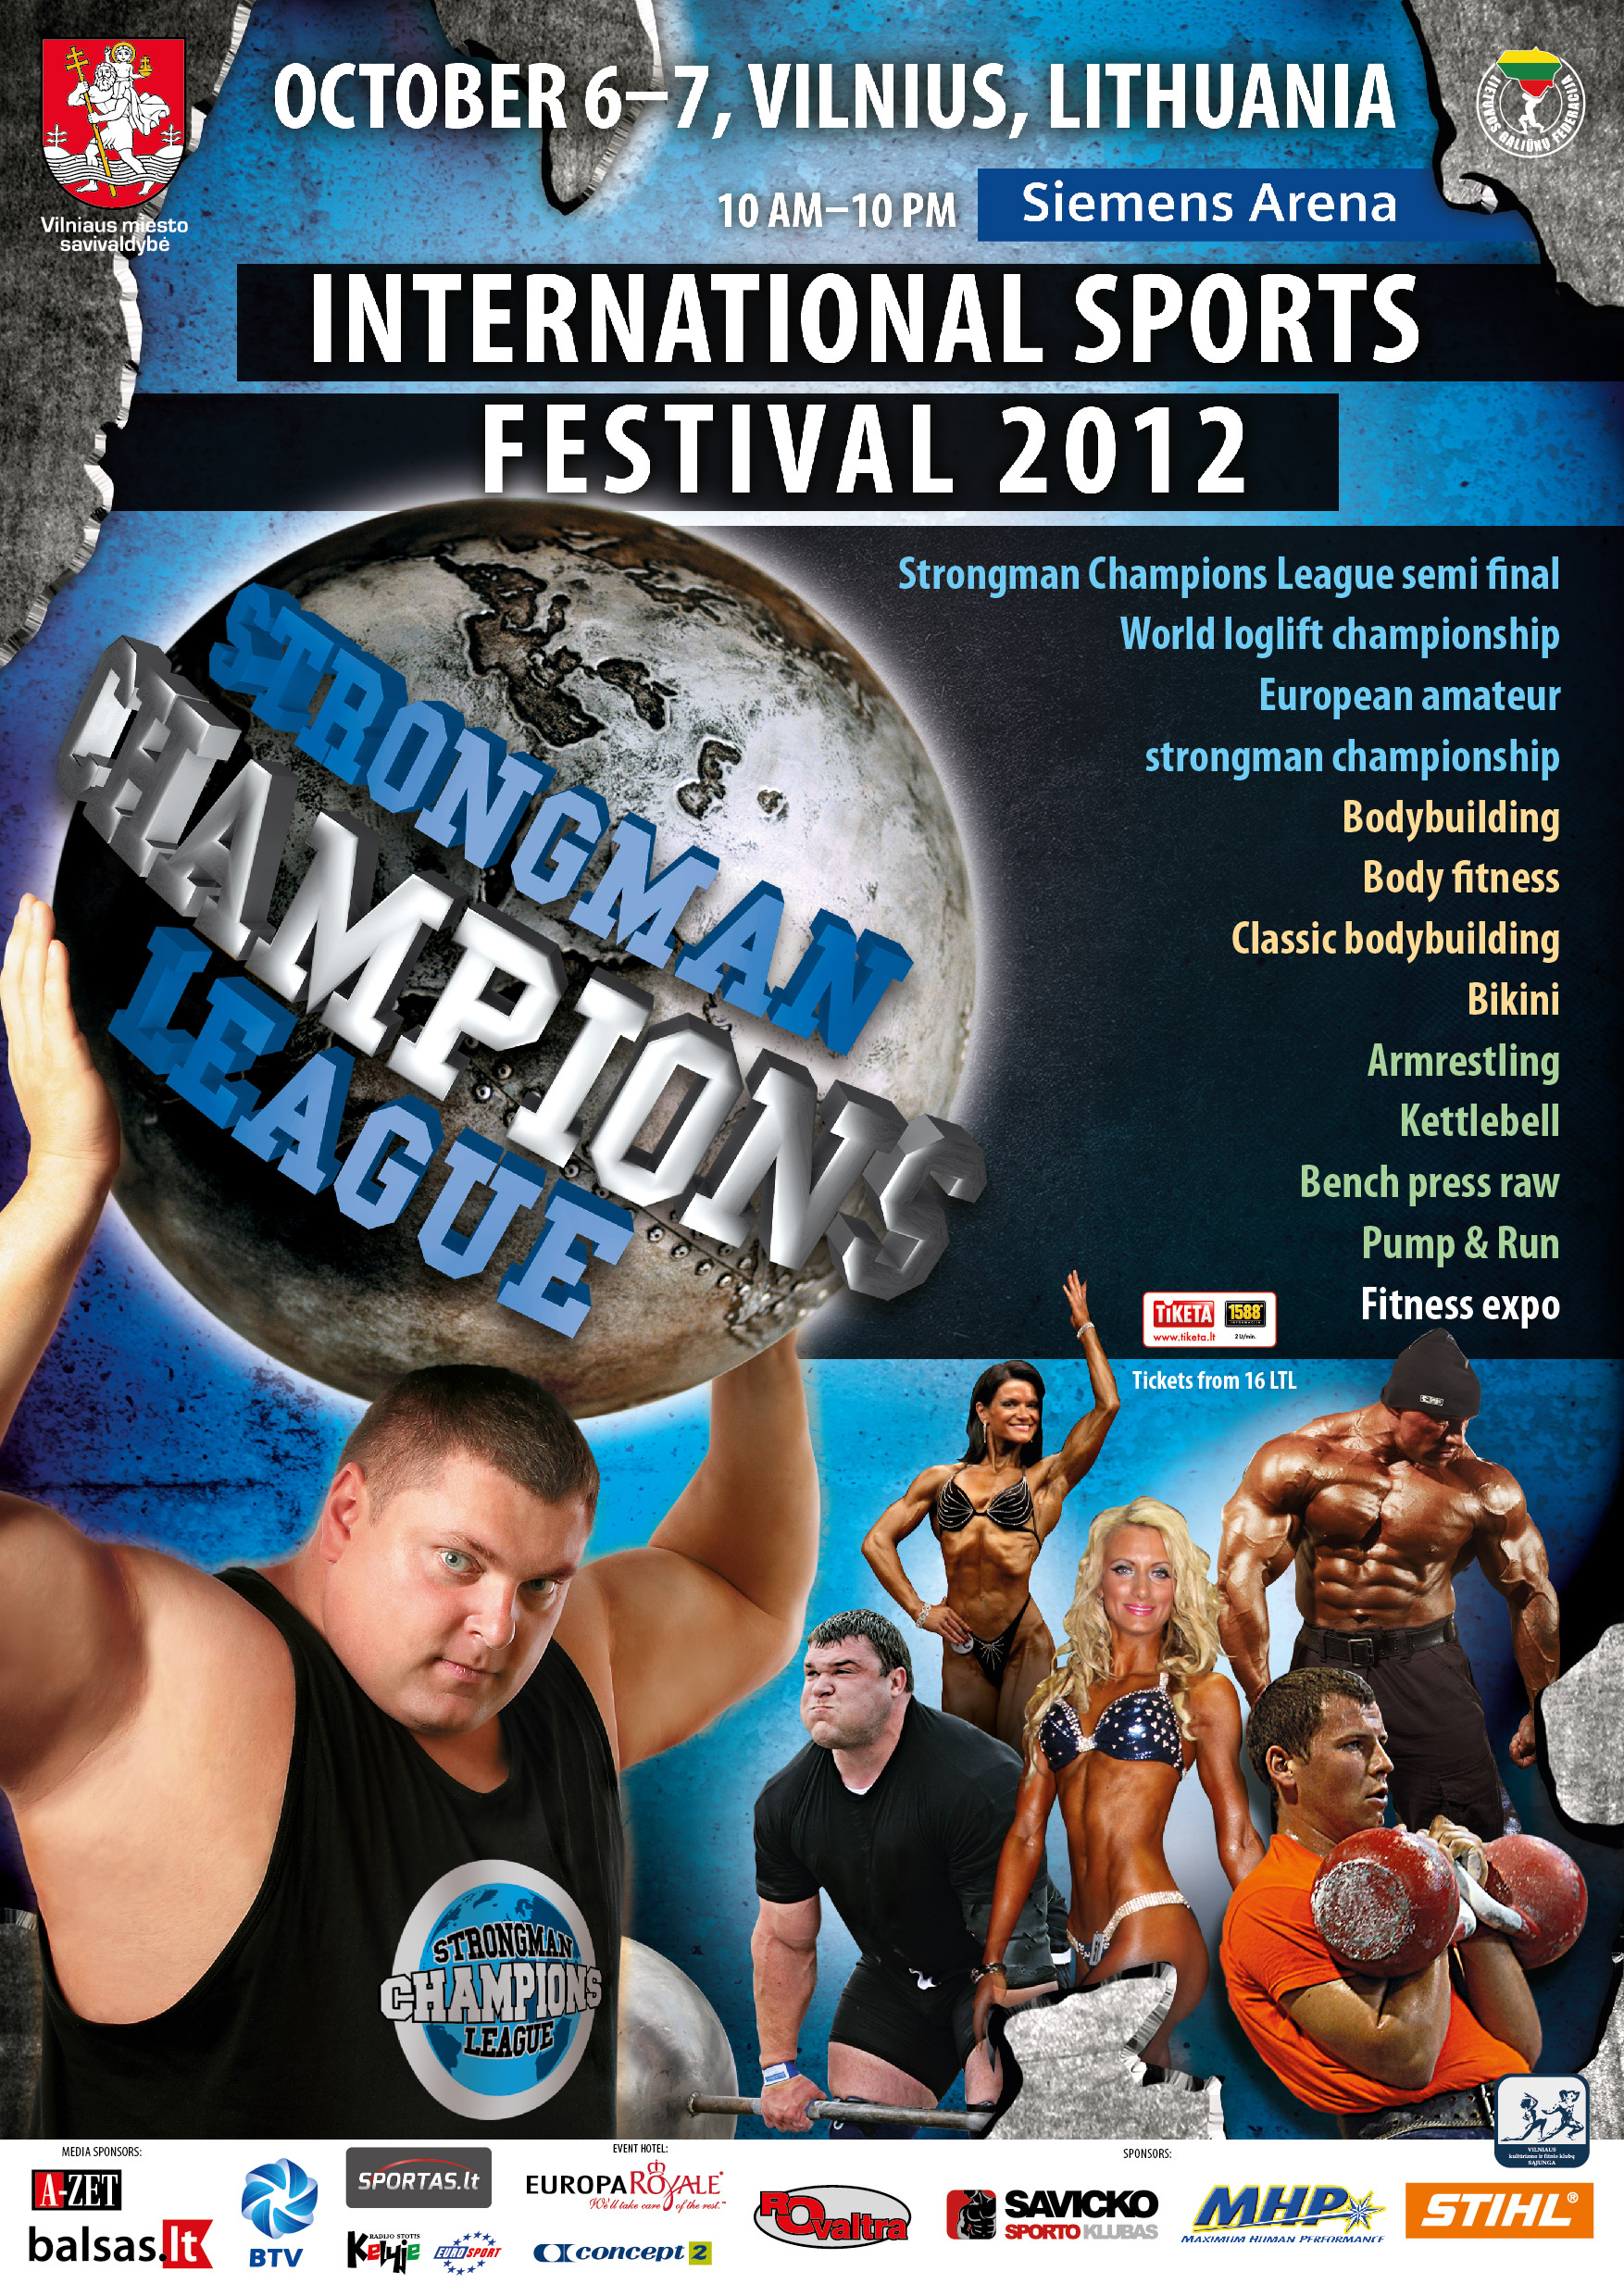 2012 European Amateur Strongman Championship